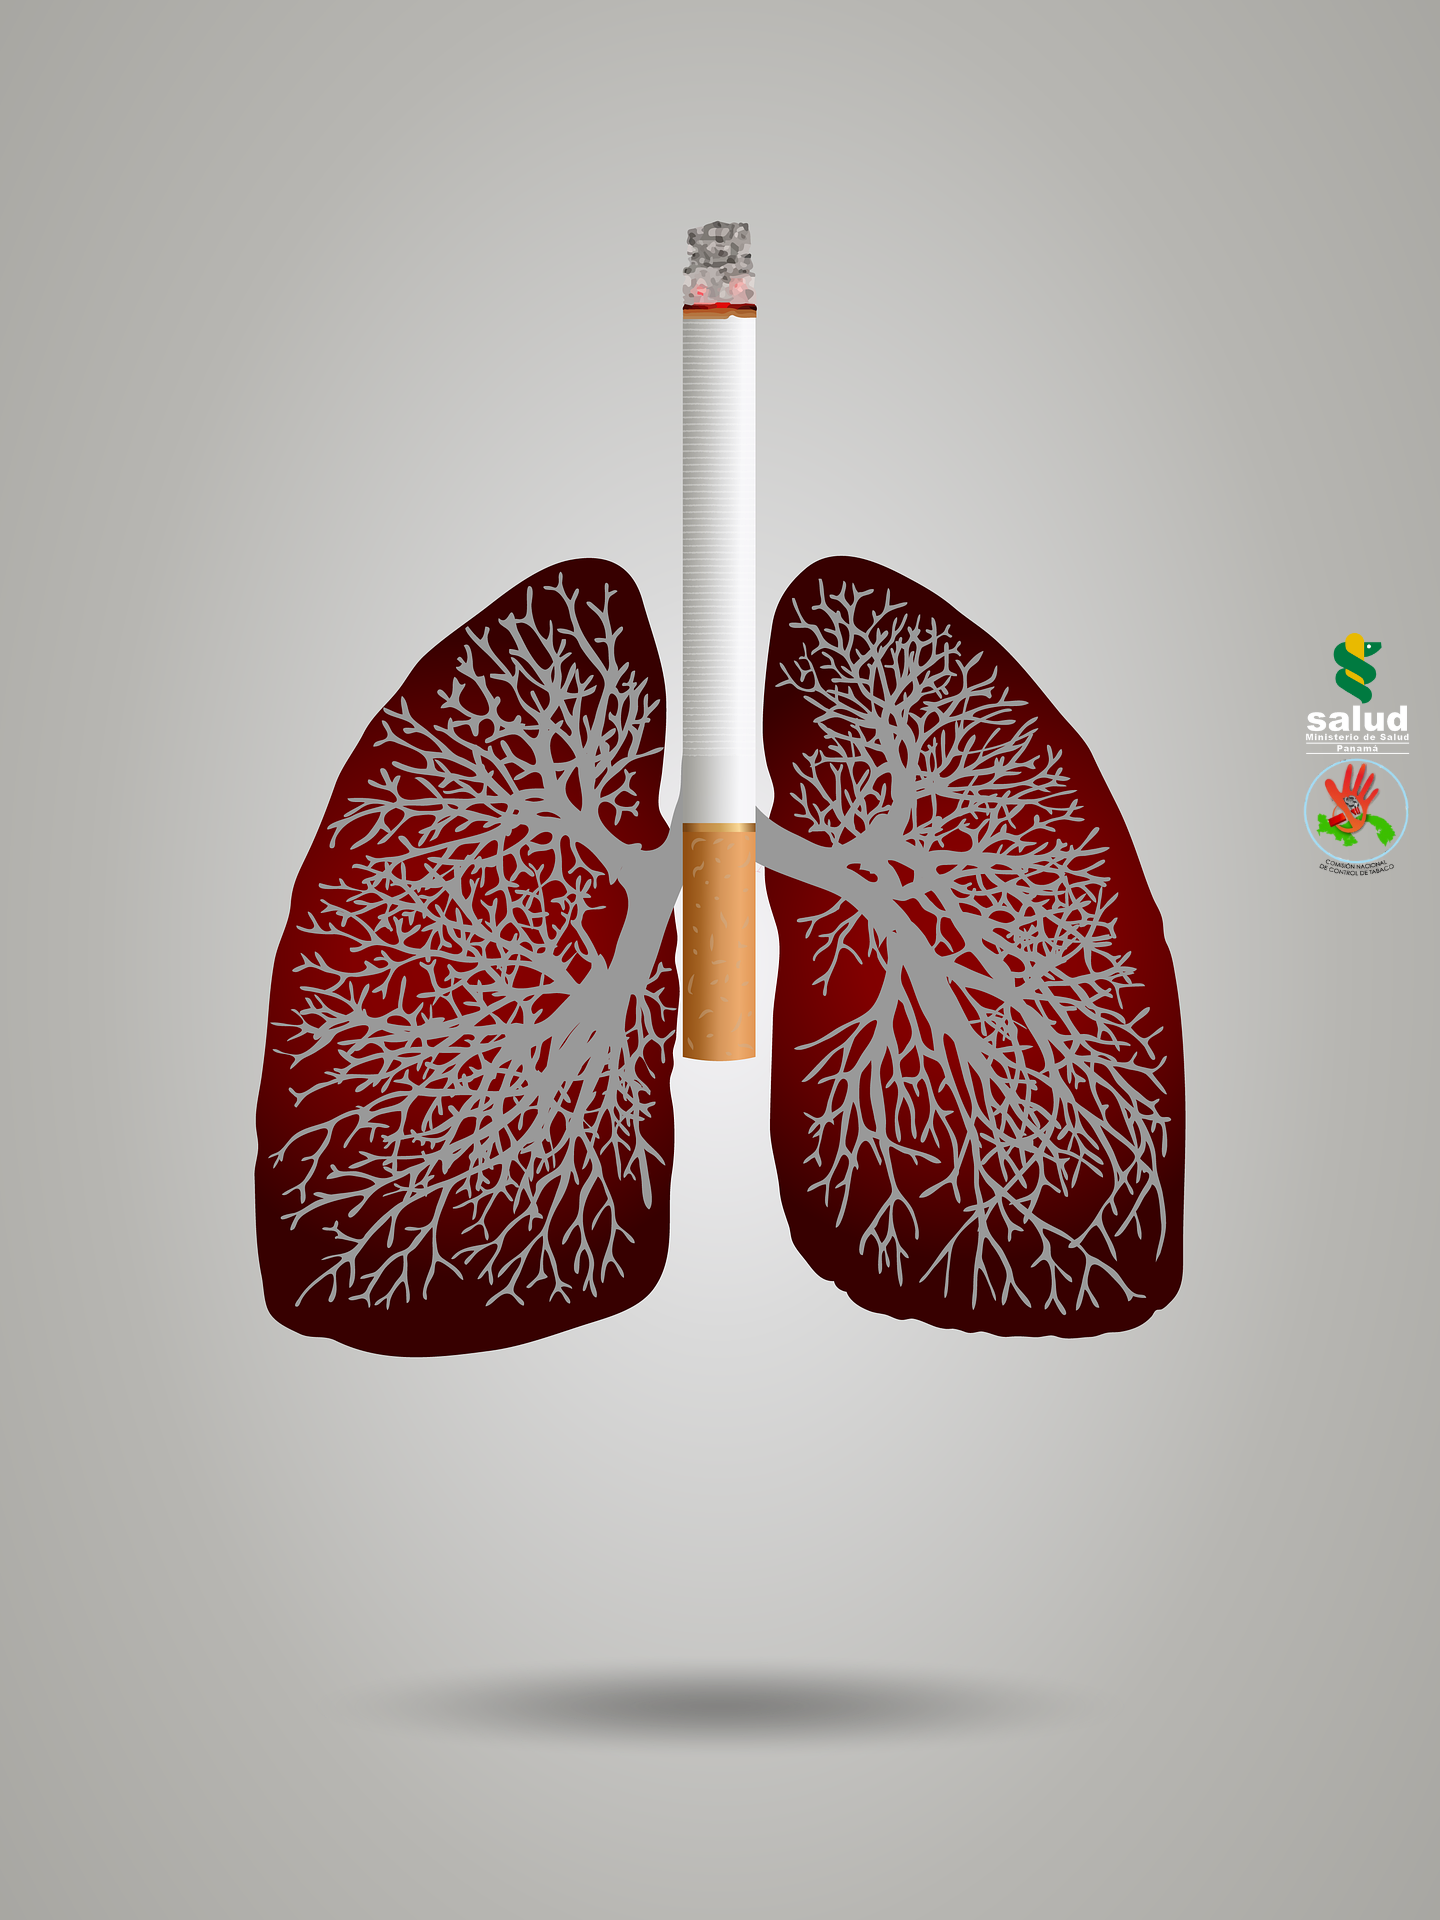 Tabaco y enfermedad pulmonar